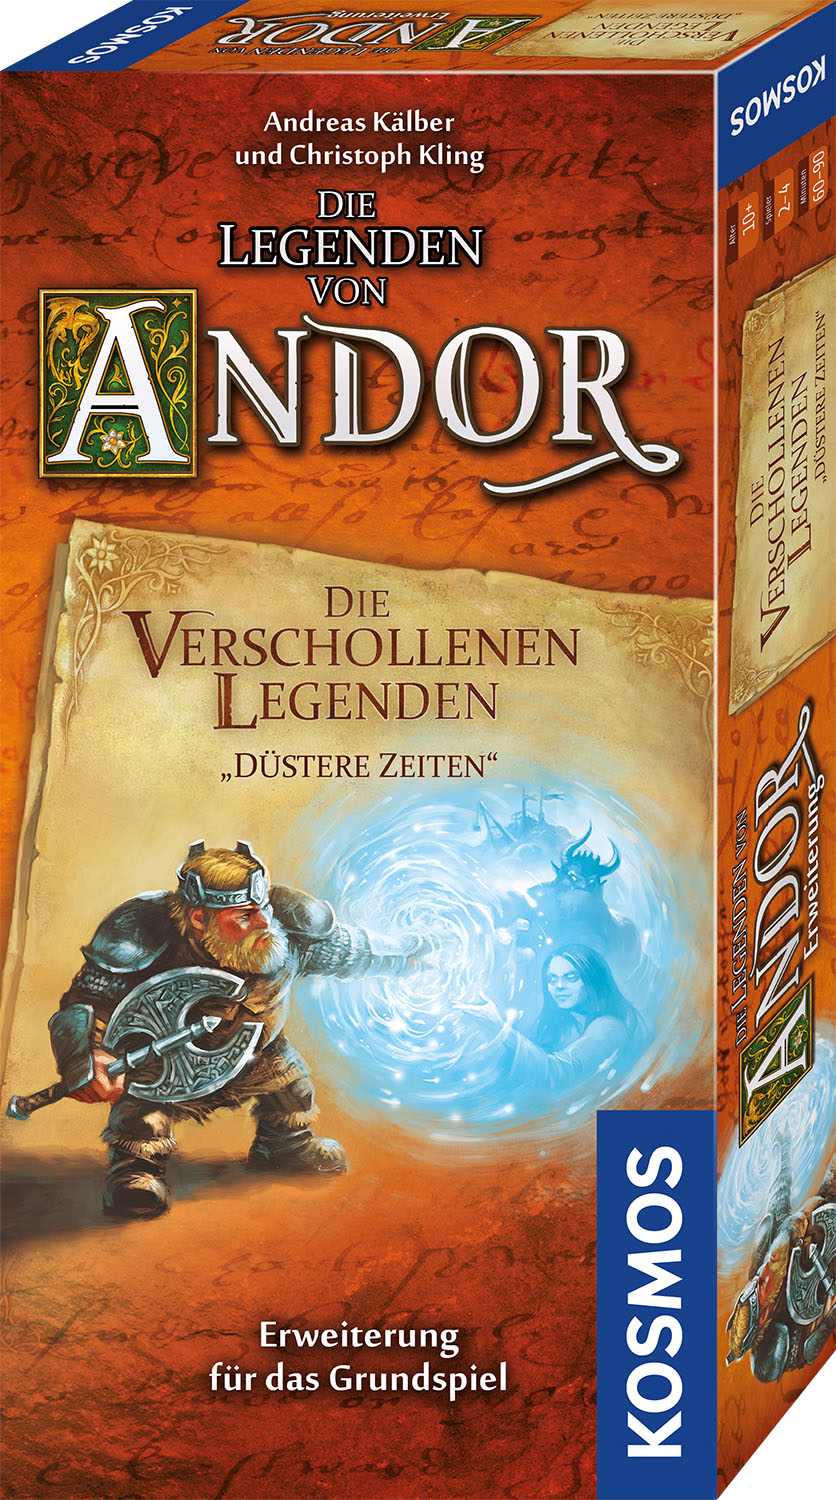 Die Legenden von Andor: Die verschollenen Legenden "Düstere Zeiten"